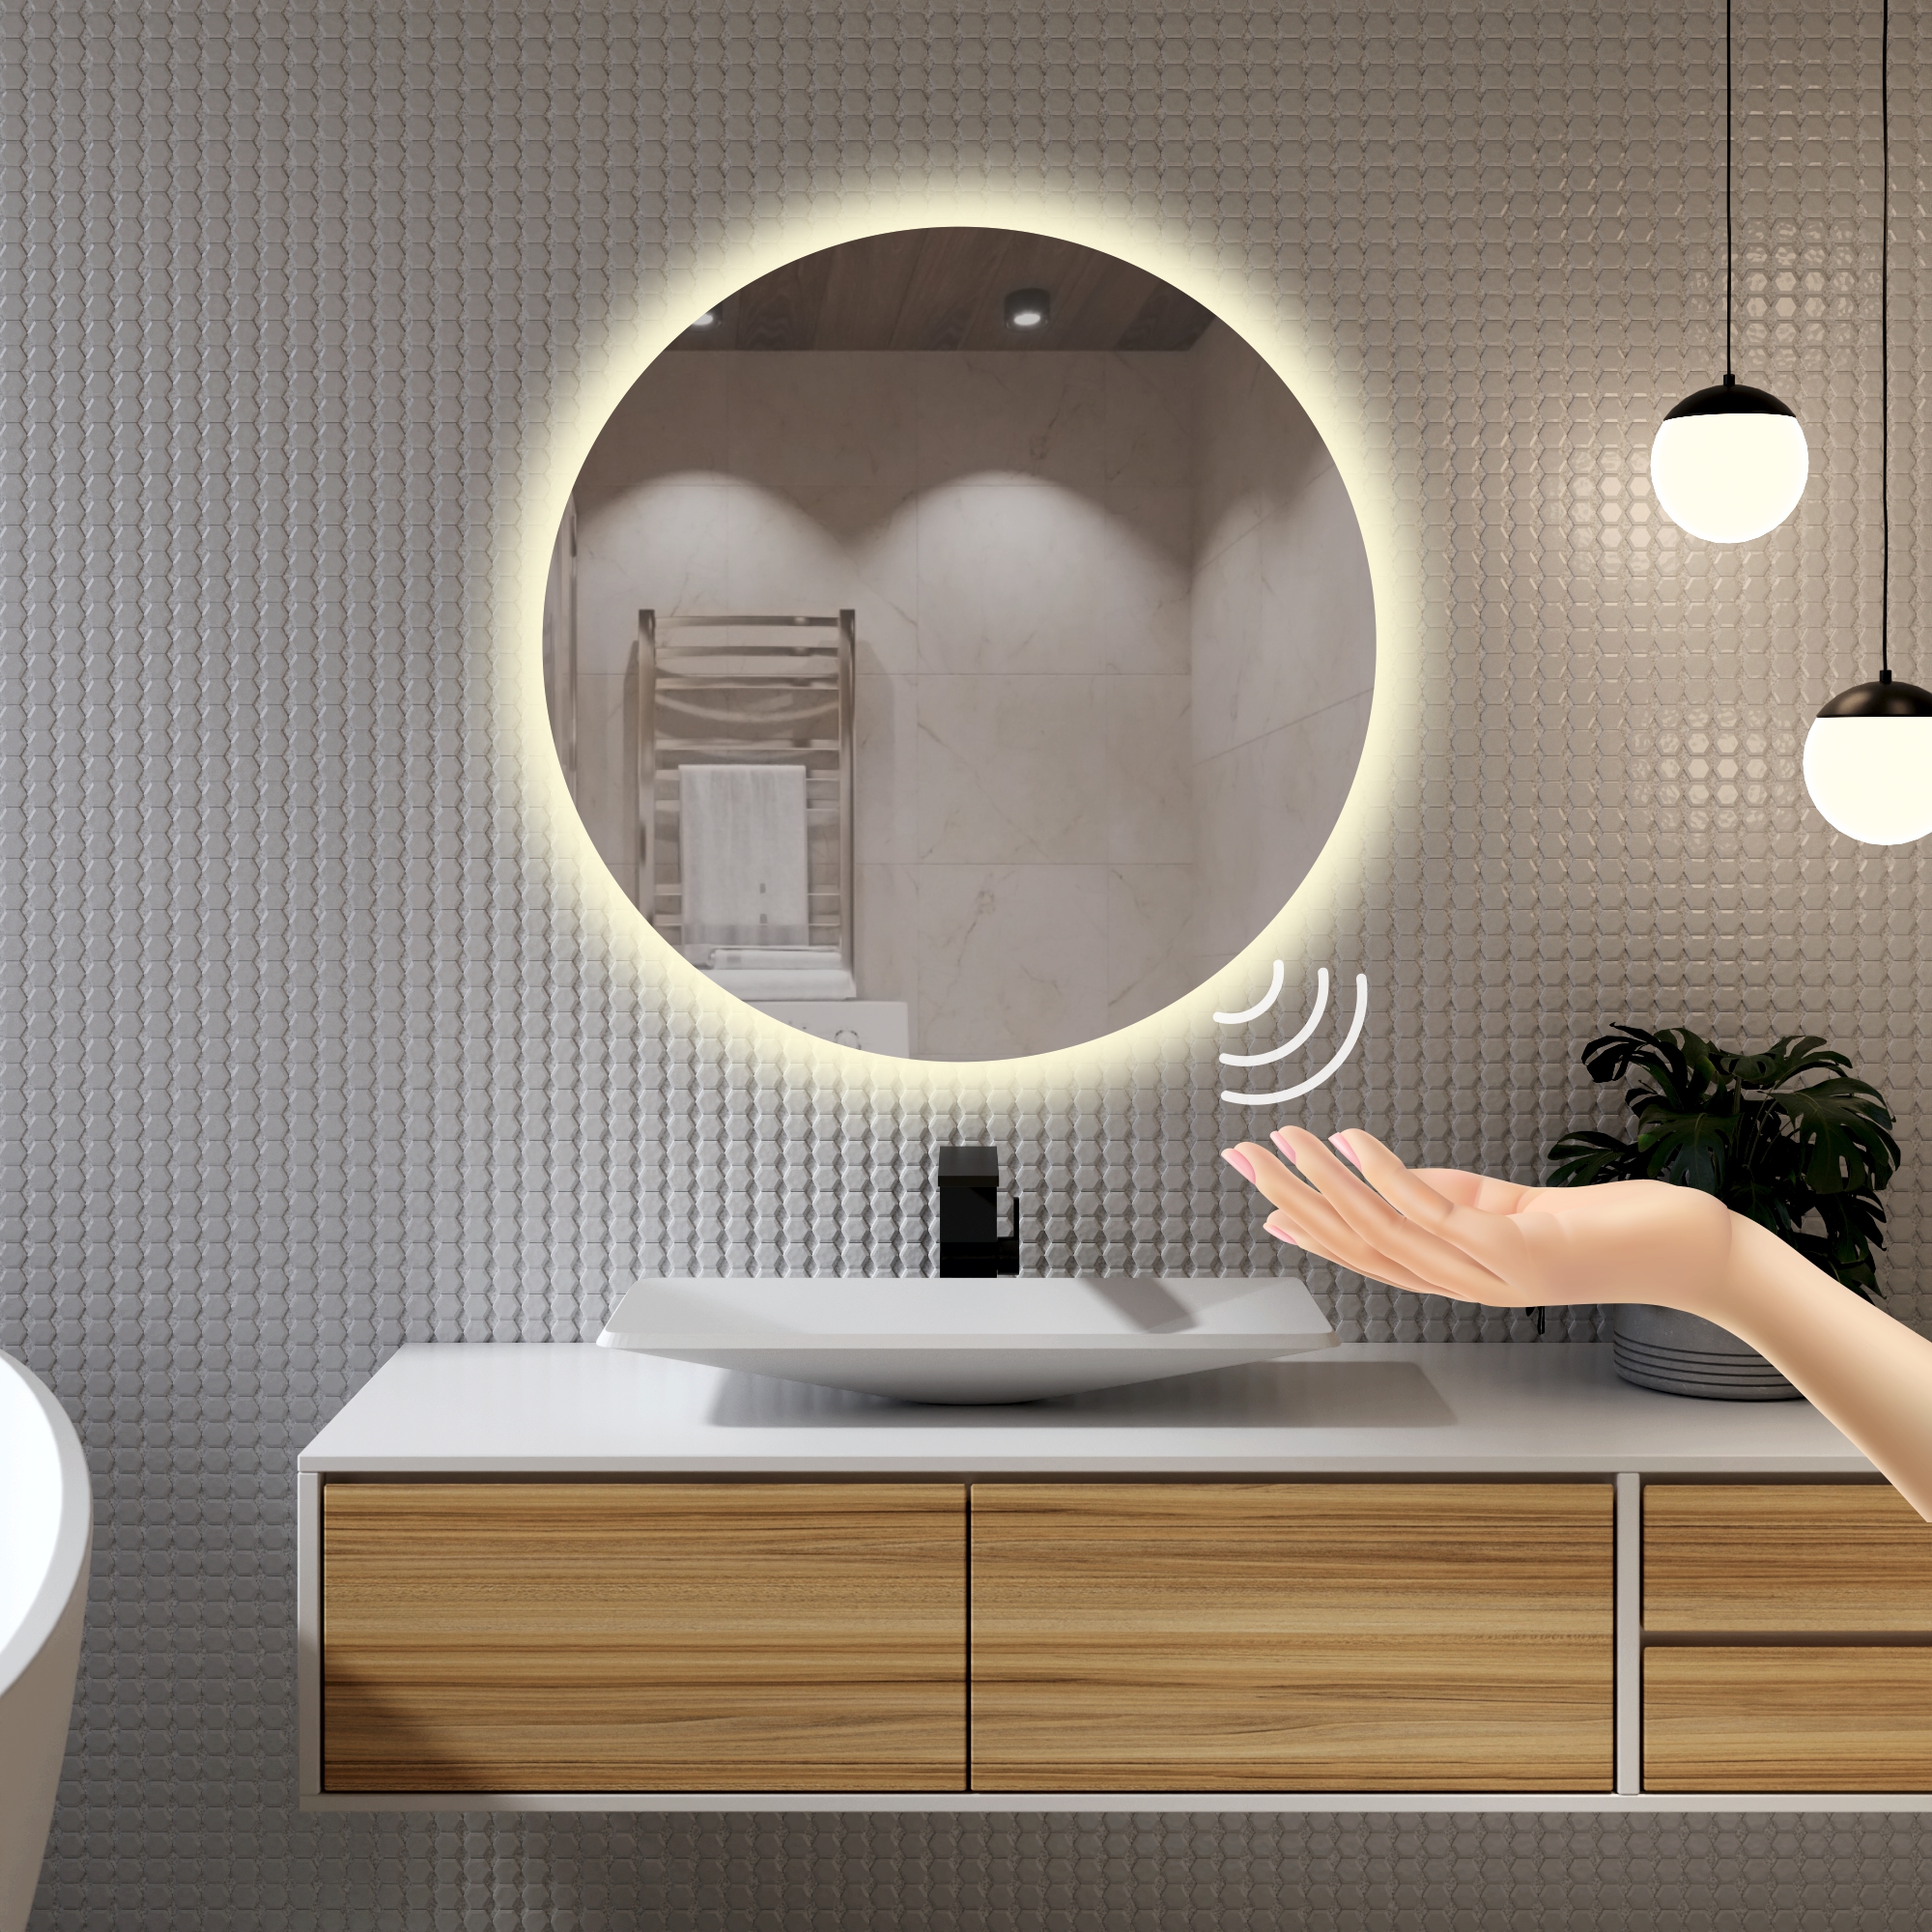 Зеркало для ванной Alfa Mirrors с дневной подсветкой 4200К круглое 40см, арт. Na-4Vzd